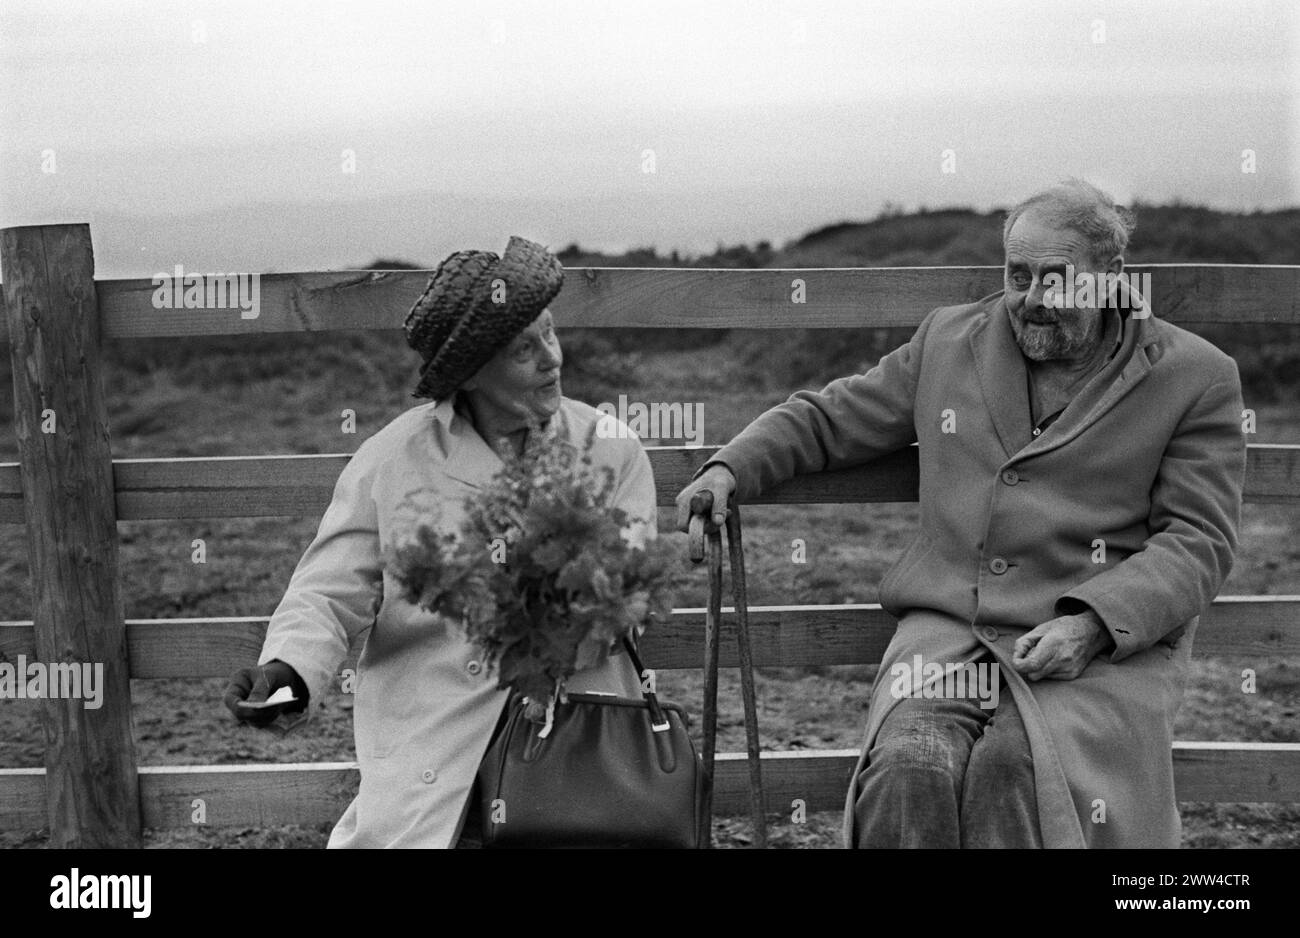 Tansys Golowan ou Baal Fire, St Johns Eve 23 juin Kit Hill Callington, Cornwall 1973. Deux bardes de Cornouailles, M. et Mme Eel, tous deux poètes membres de la Old Cornish Society, récitent des poèmes avant que le feu de joie ne soit allumé. La Dame des fleurs jettera son bouquet d'herbes douces et amères dans les flammes pour encourager le bien et brûler le mal. À travers les Cornouailles, Tansys Golowan est célébré par l'allumage de feux de joie sur les collines. ANNÉES 1970 ROYAUME-UNI HOMER SYKES Banque D'Images